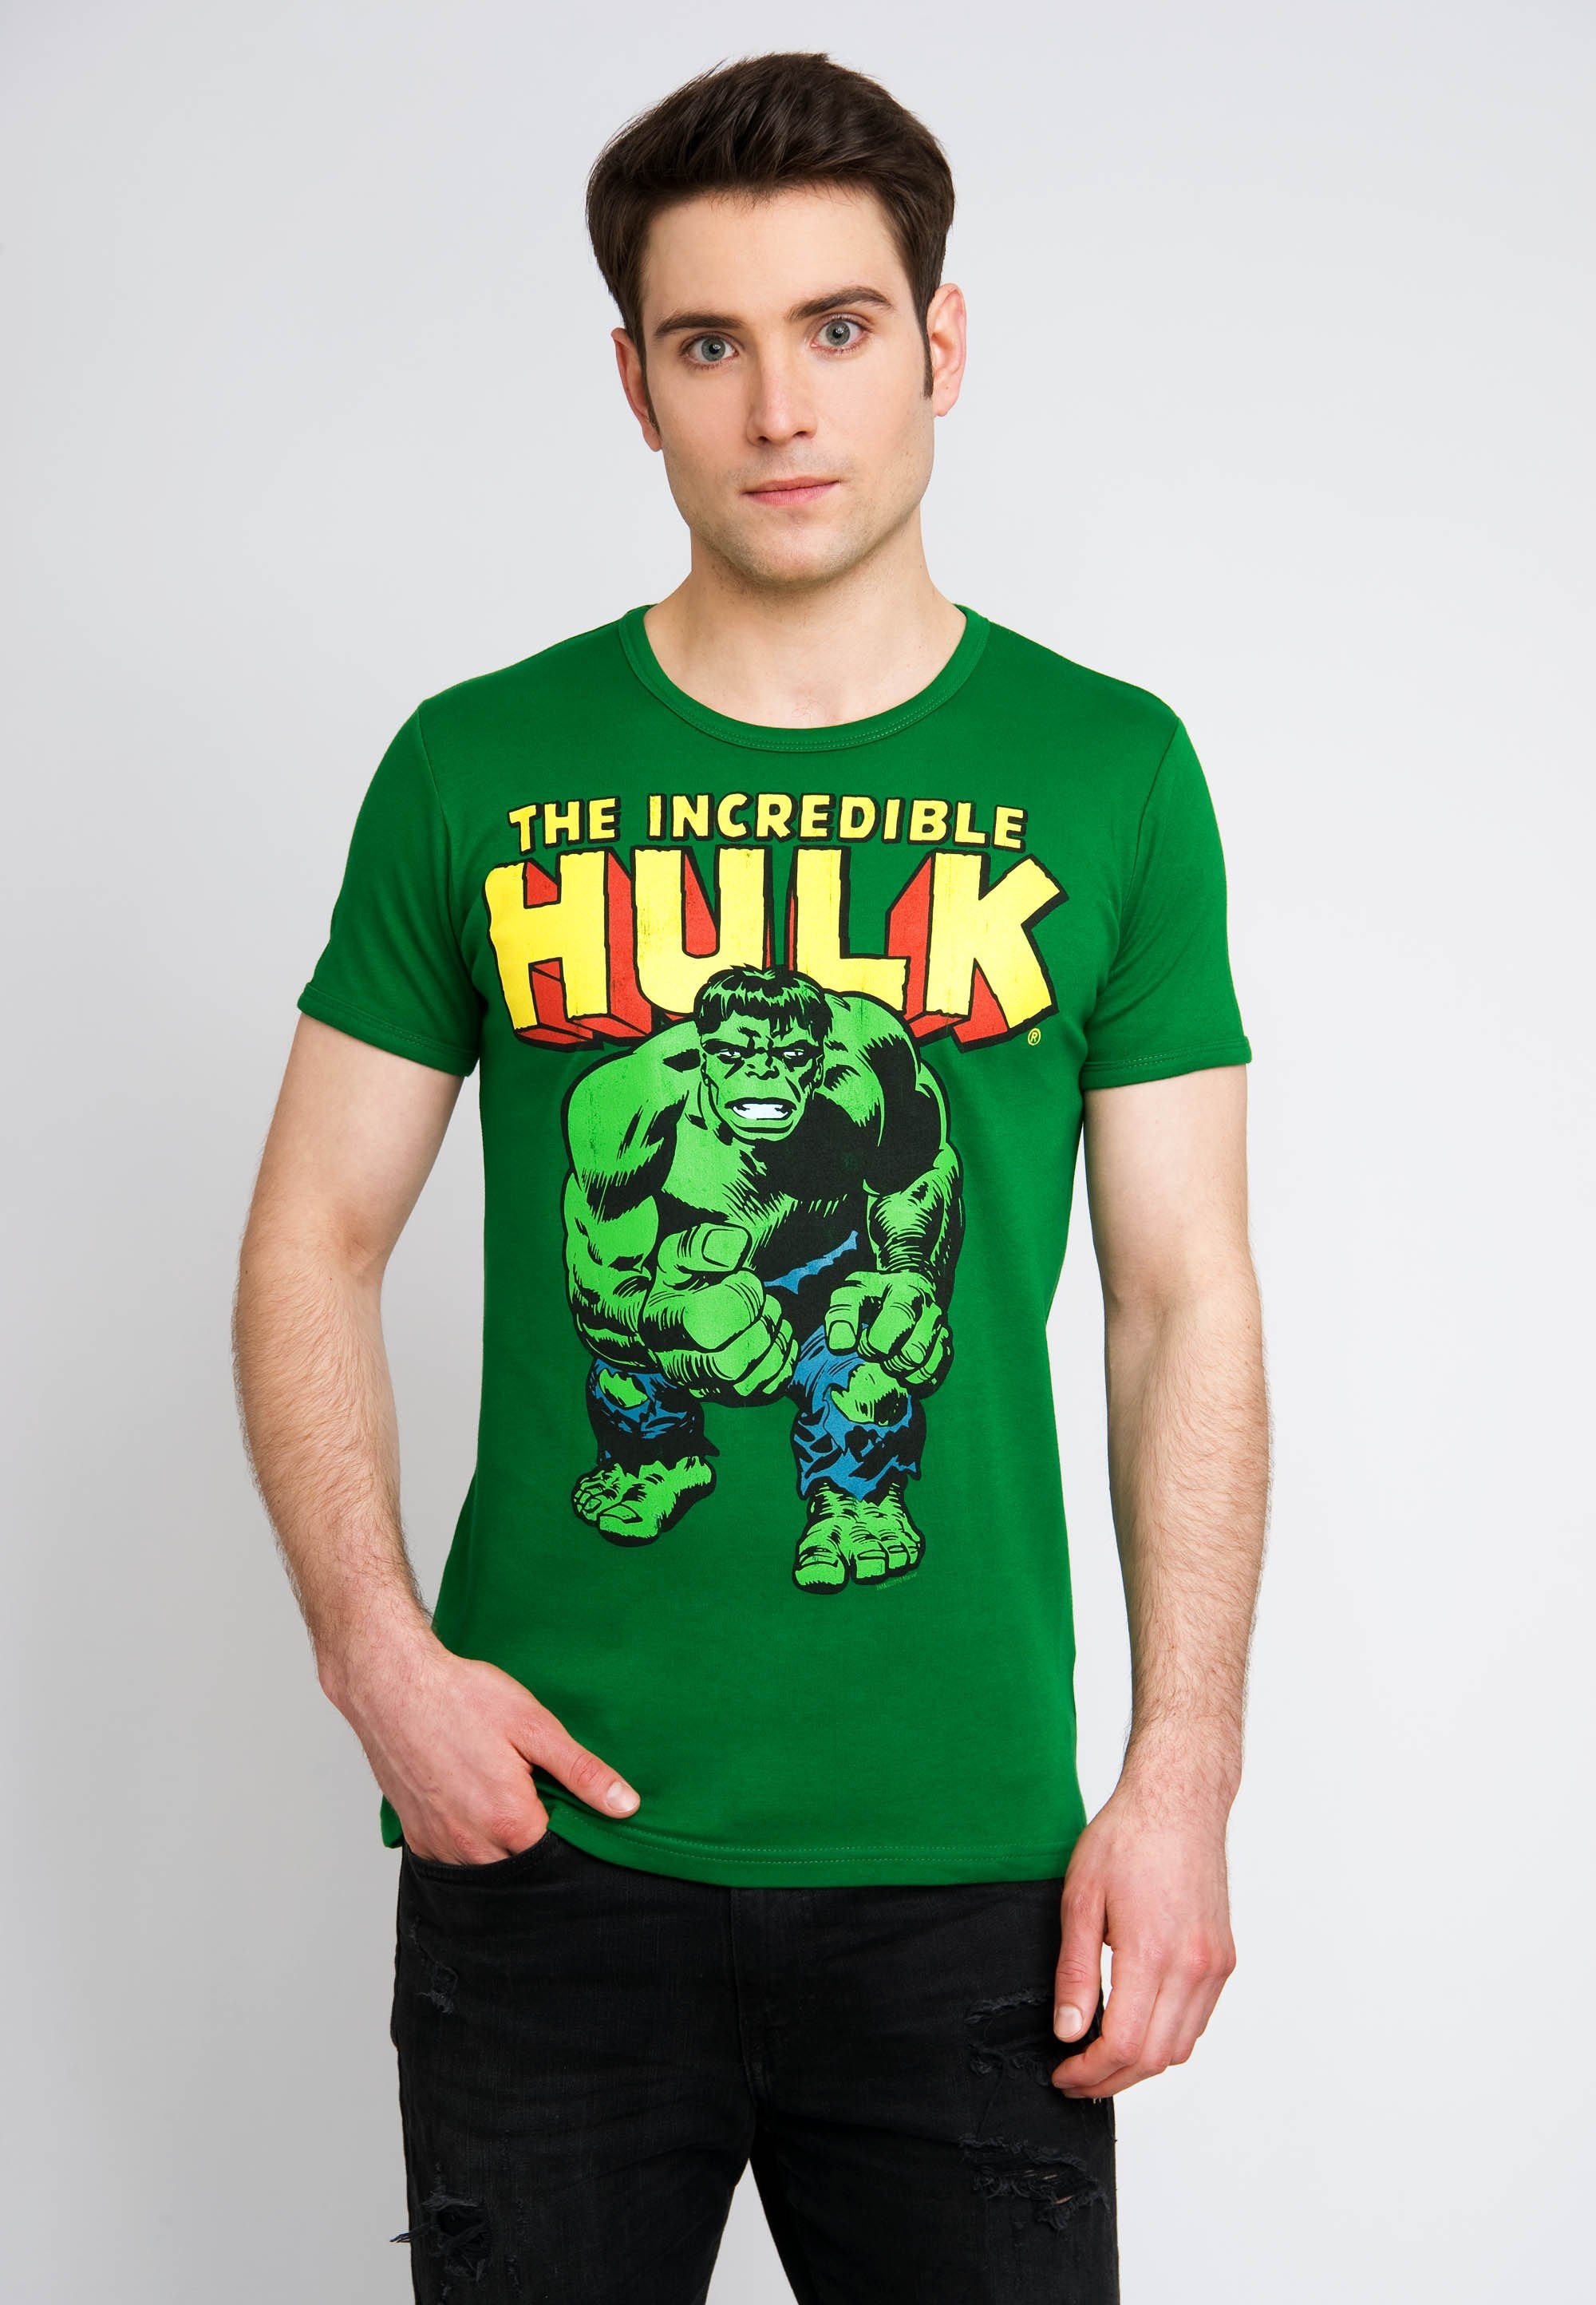 LOGOSHIRT T-Shirt Retro-Motiv Incredible Hulk mit The